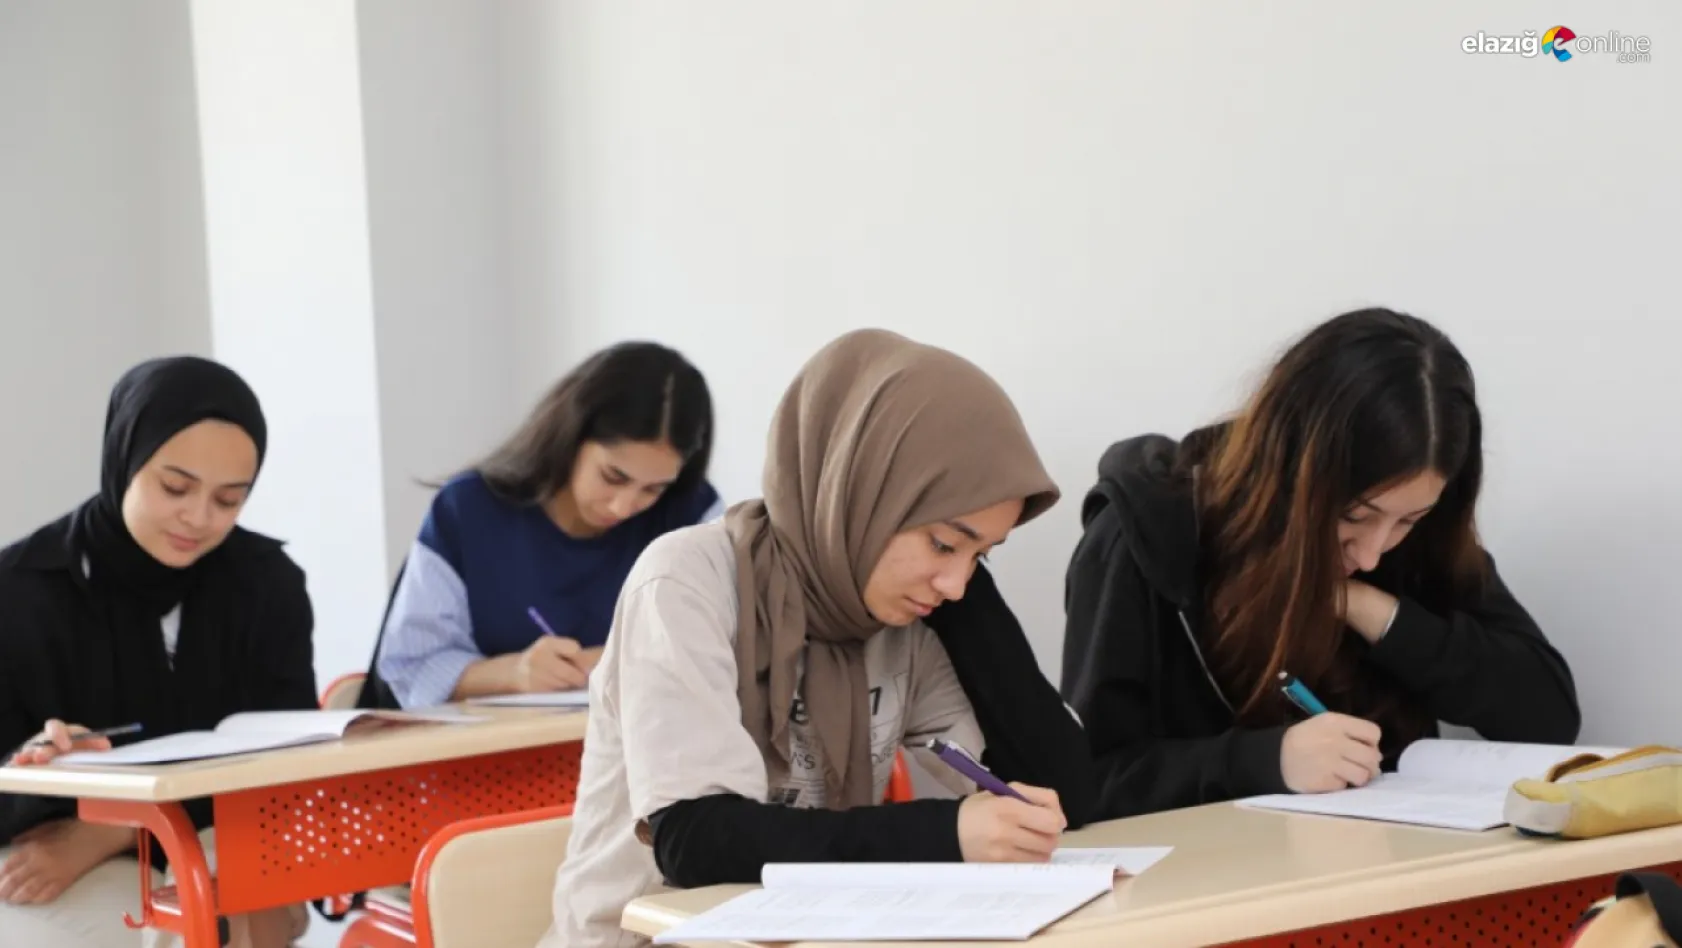 Elazığ Belediyesi'nden Elazığspor temalı sınav!